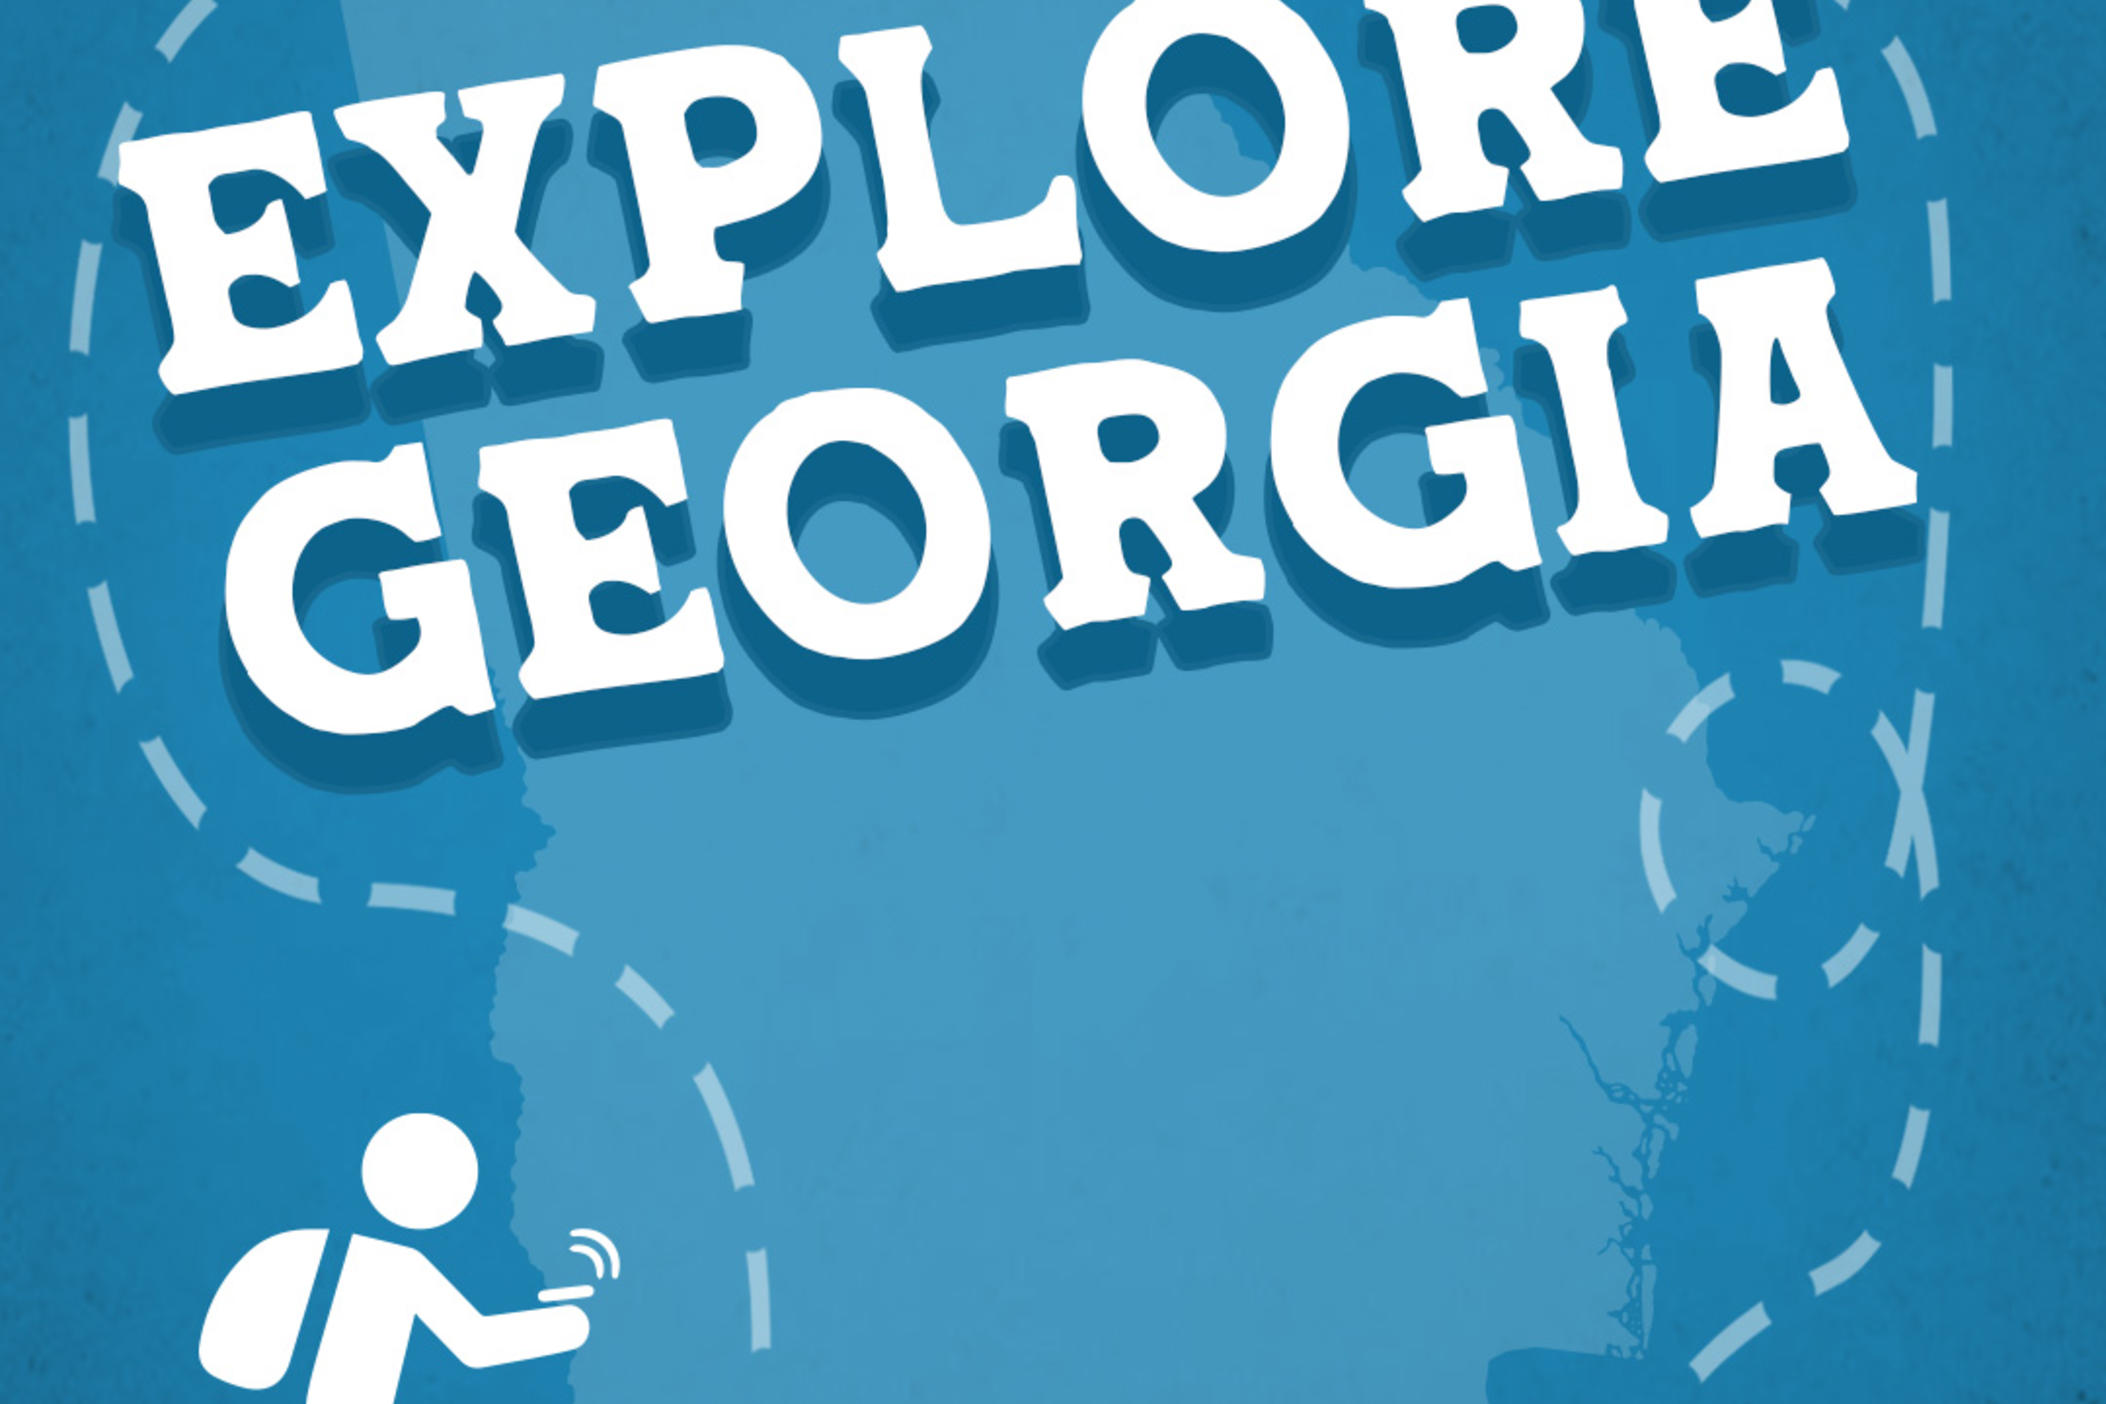 explore georgia